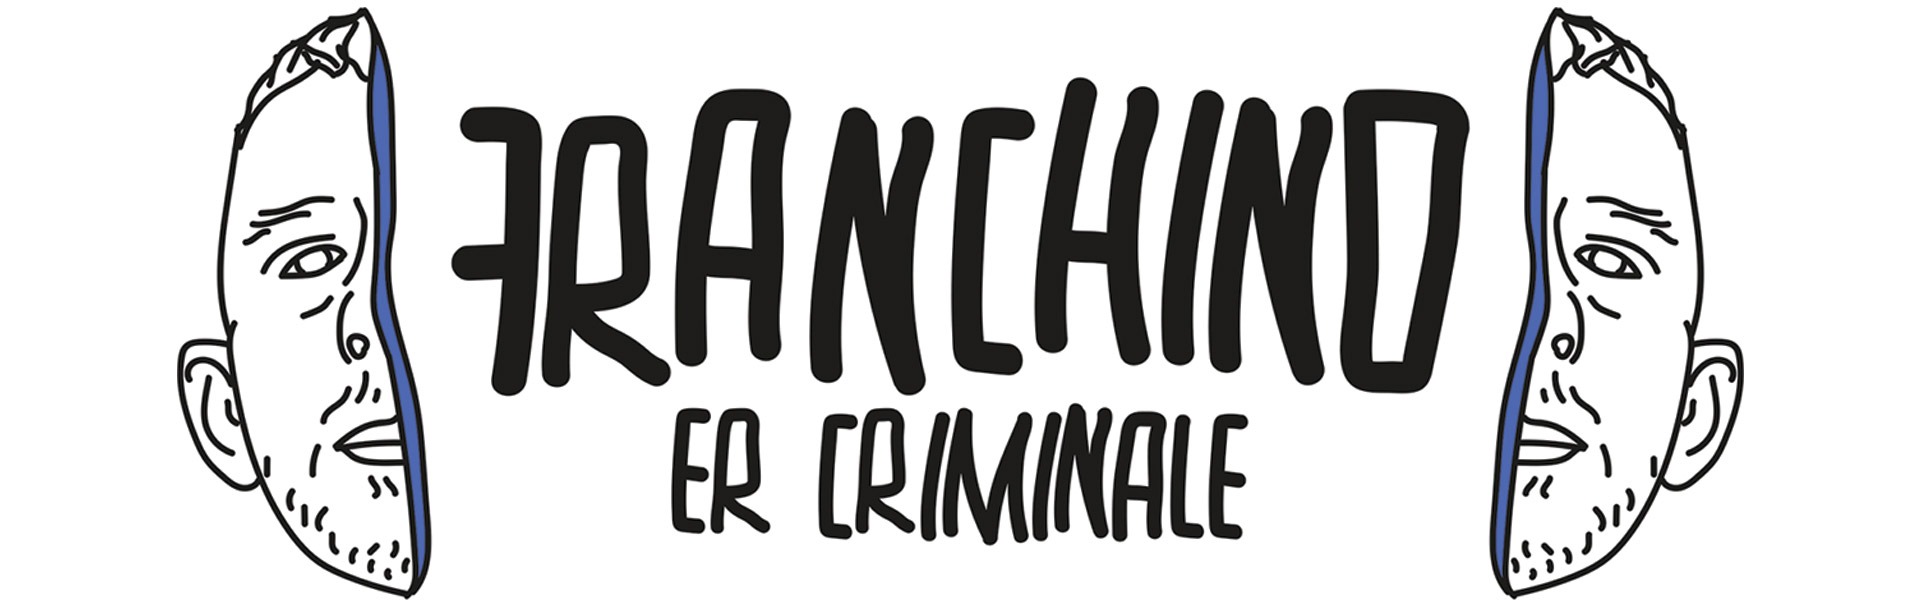 Banner-franchino-er-criminale-boostit